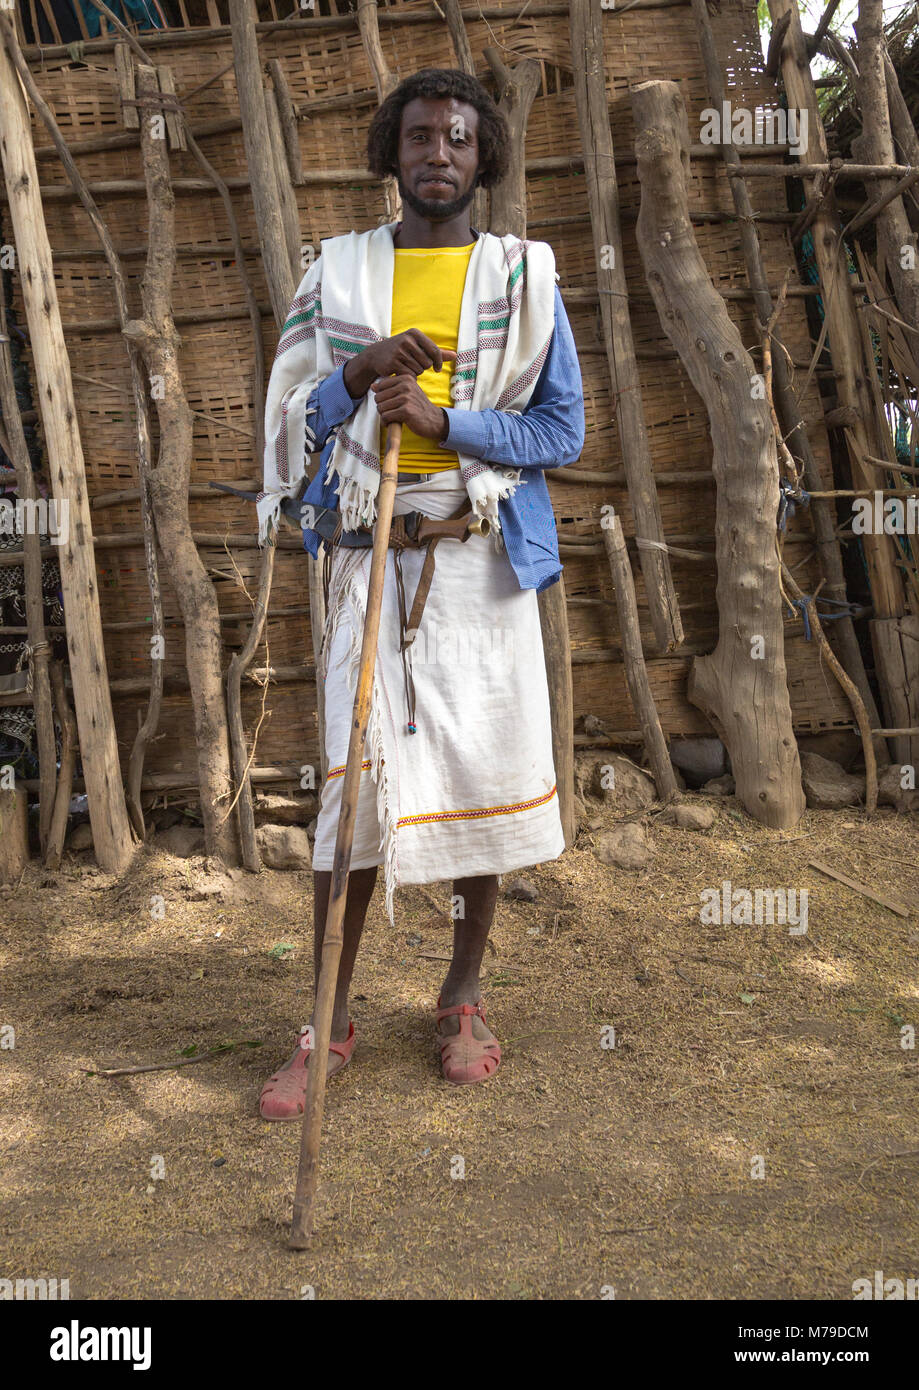 Stolz karrayyu Stamm Mann in traditioneller Kleidung auf einem Markt Tag, Oromia, Metehara, Äthiopien Stockfoto